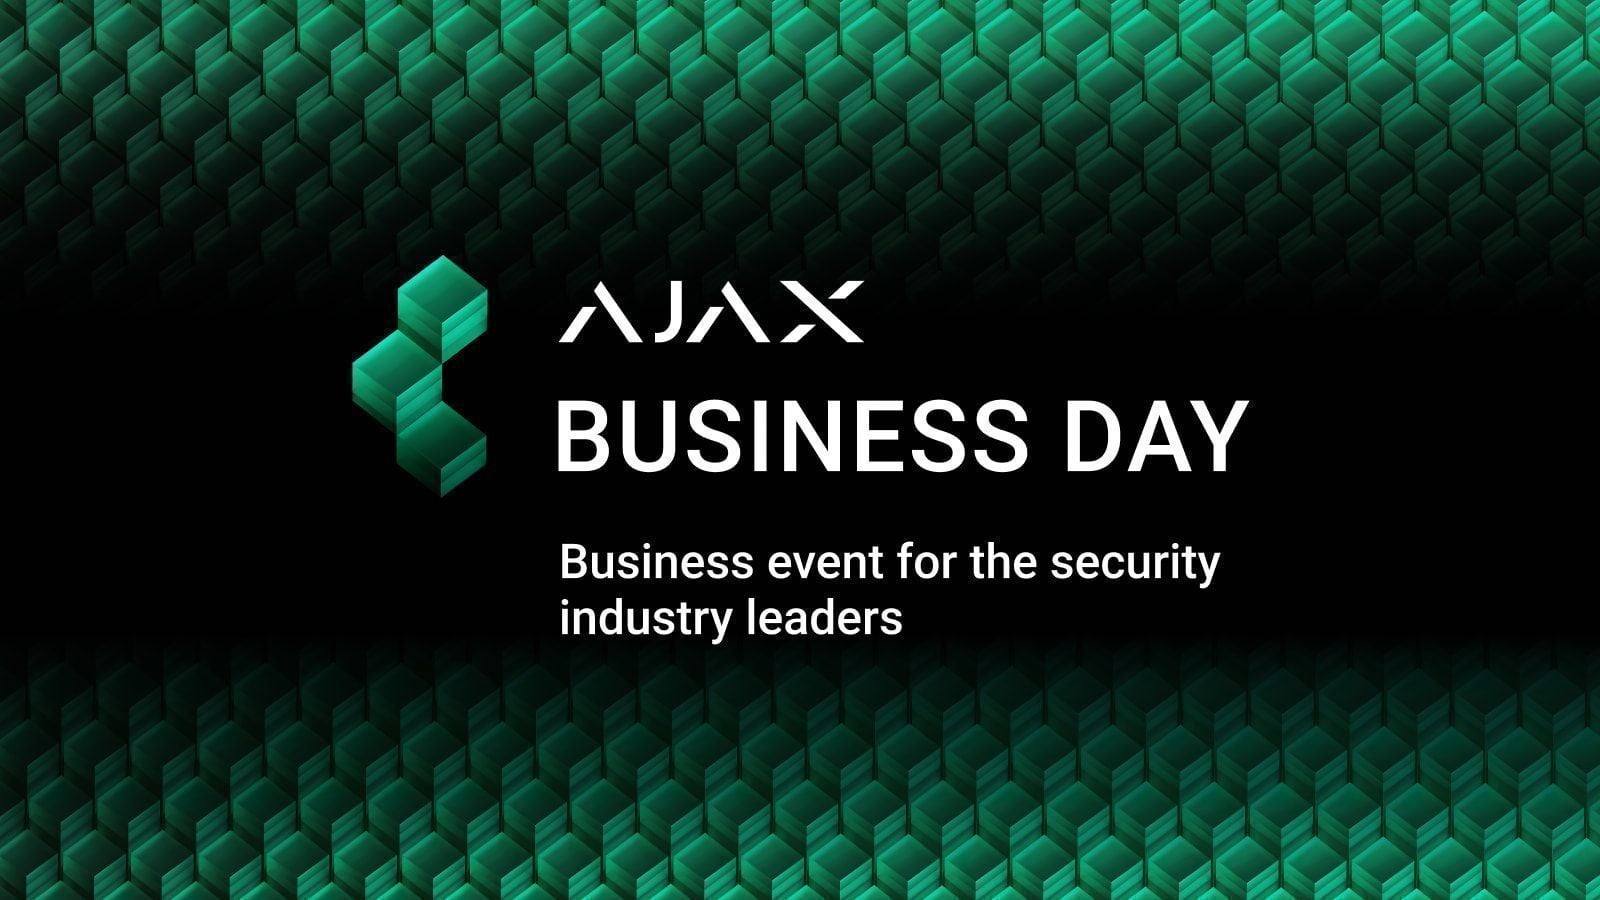 Ajax Systems organiseert een aantal Ajax Business Day-evenementen in Duitsland, Oostenrijk, Zwitserland, Italië en Frankrijk